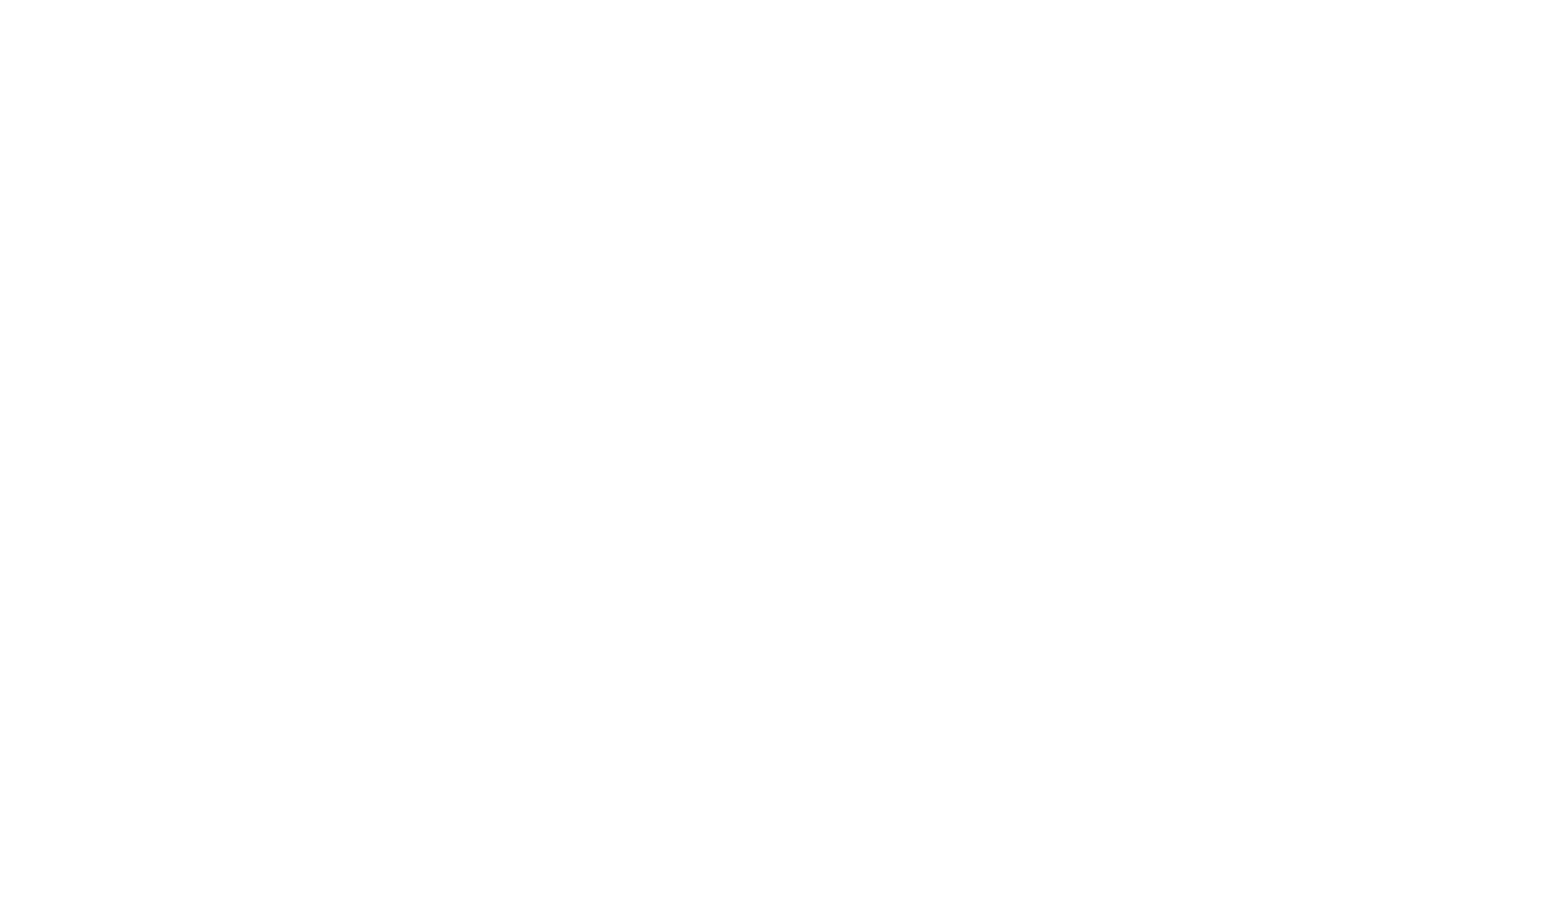 dormakaba logo for dark backgrounds (transparent PNG)